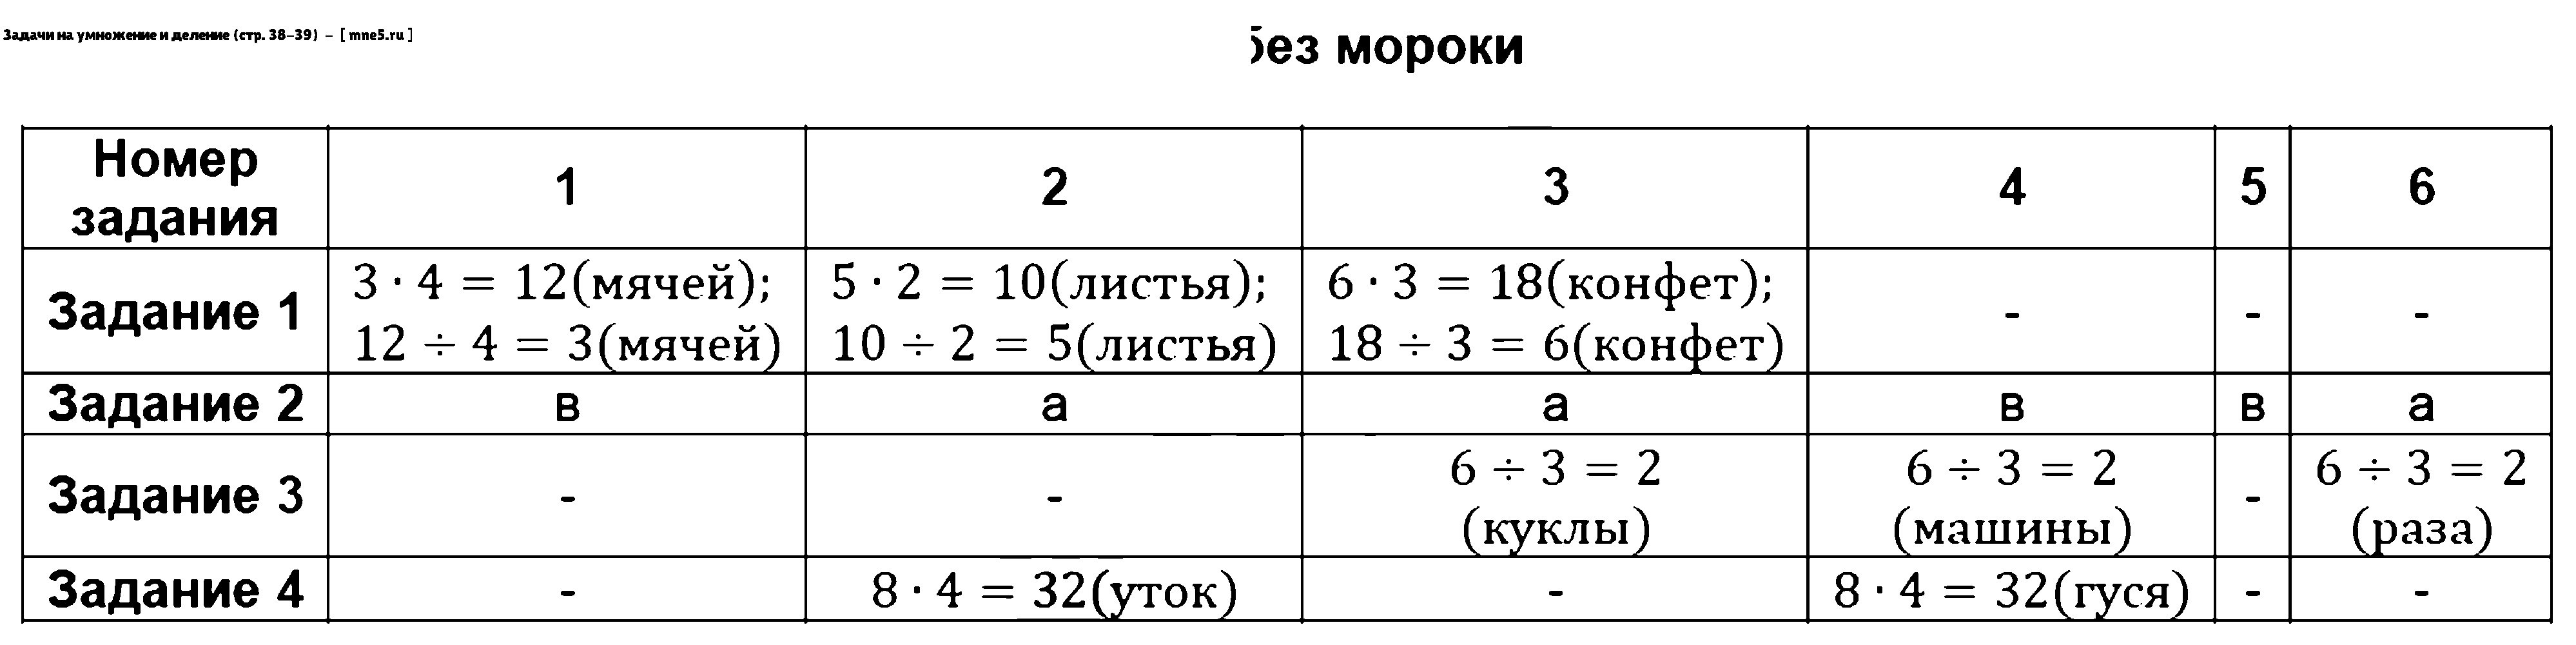 ГДЗ Математика 3 класс - Задачи на умножение и деление (стр. 38-39)